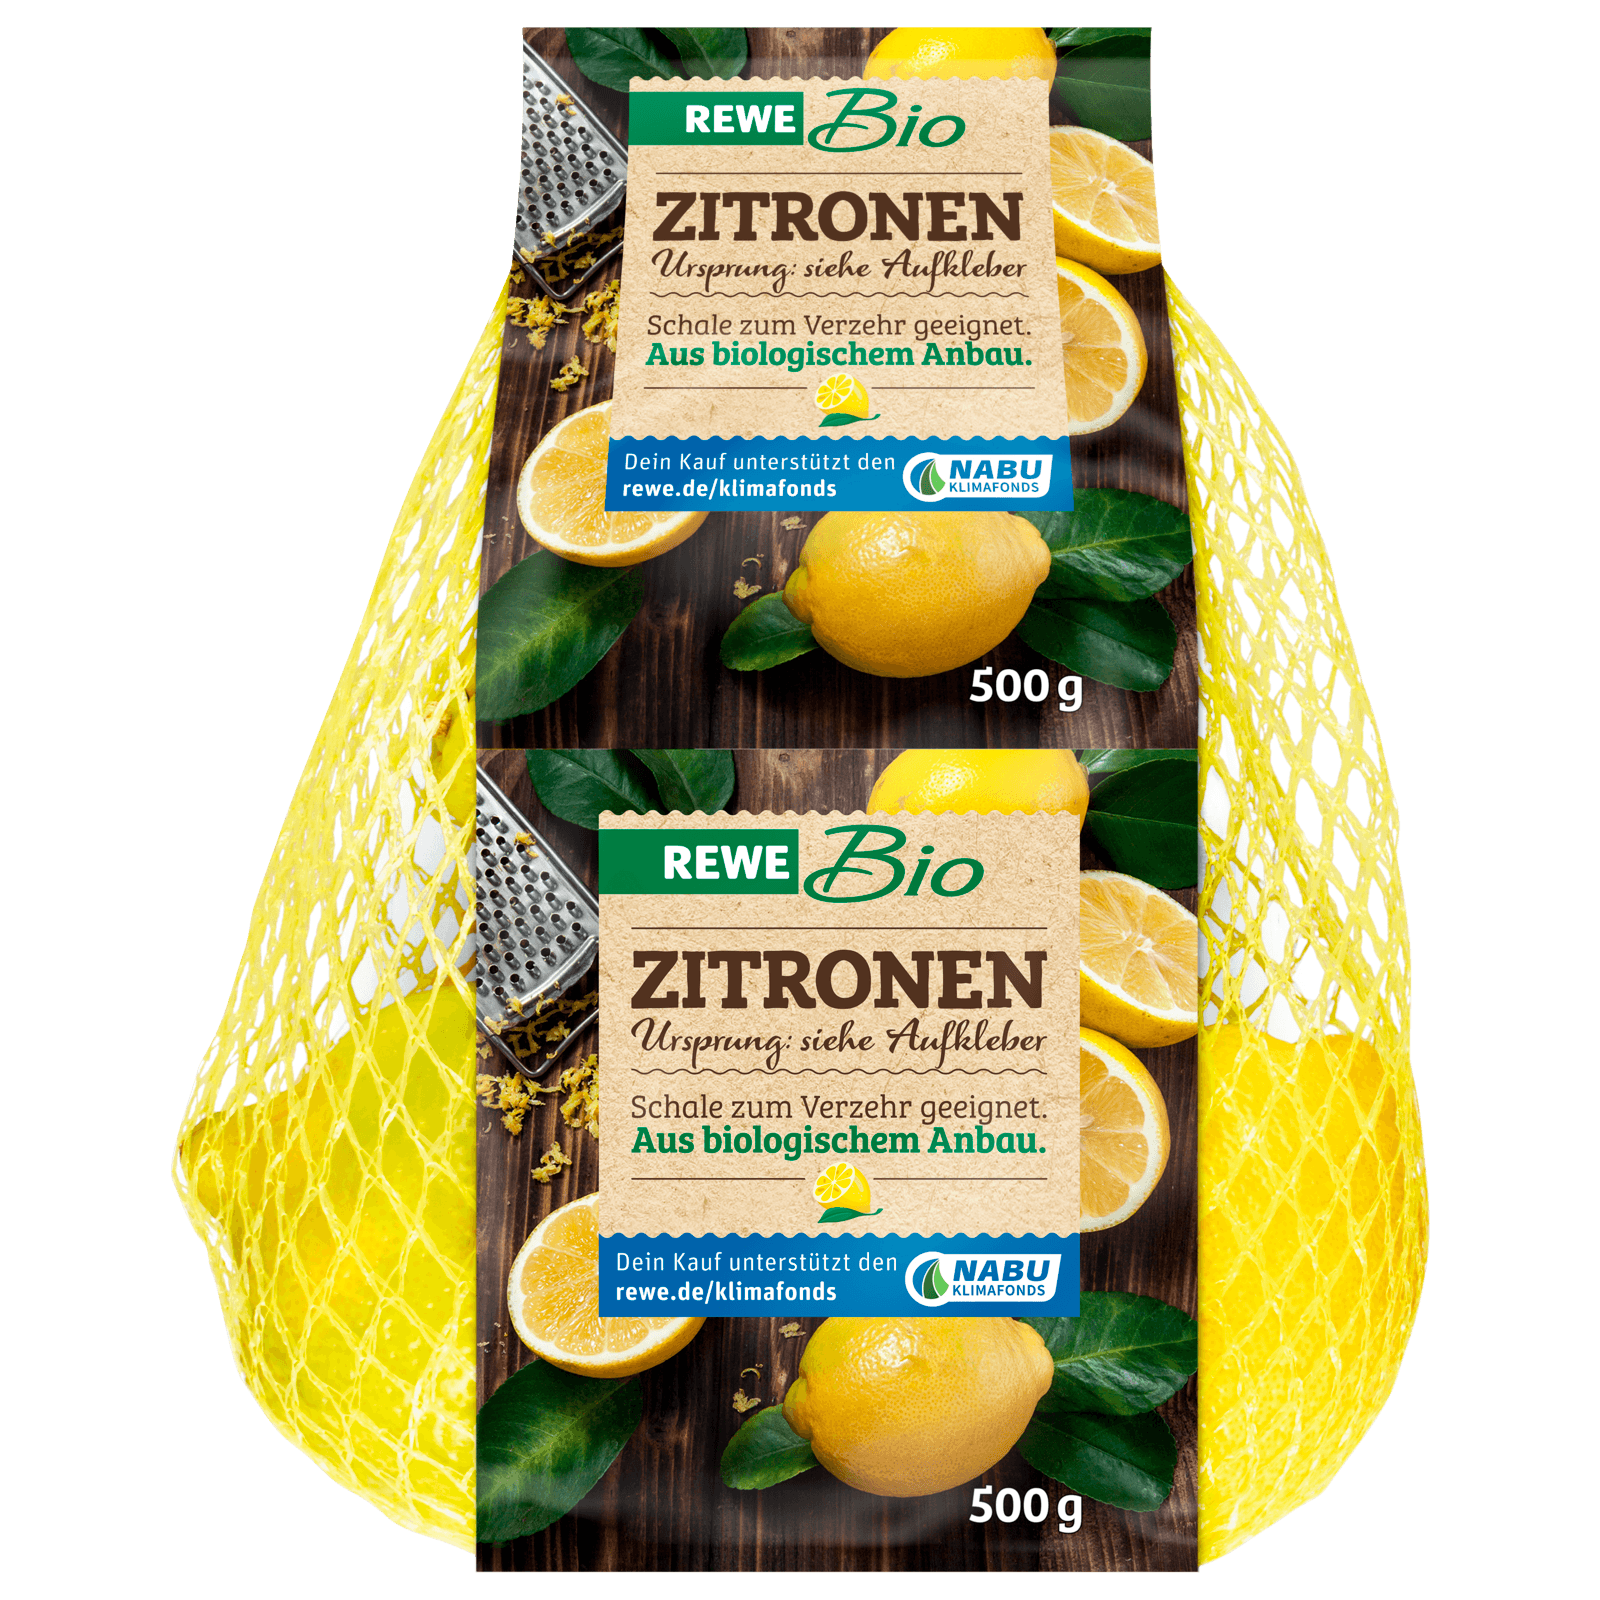 bei 500g im online REWE Netz Bio REWE Zitrone bestellen!